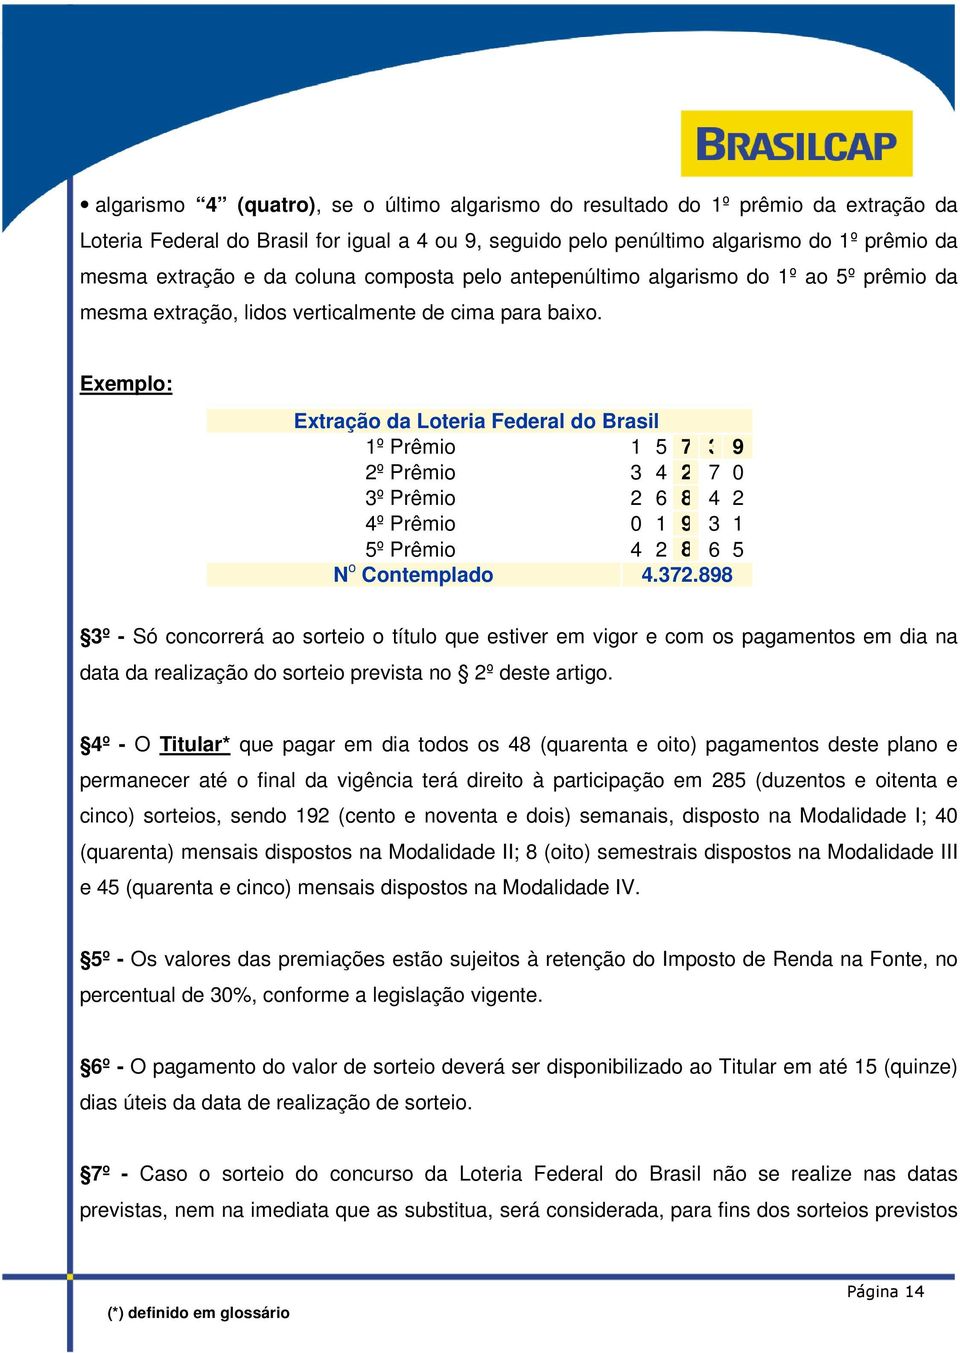 Exemplo: Extração da Loteria Federal do Brasil 1º Prêmio 1 5 7 3 9 2º Prêmio 3 4 2 7 0 3º Prêmio 2 6 8 4 2 4º Prêmio 0 1 9 3 1 5º Prêmio 4 2 8 6 5 N o Contemplado 4.372.